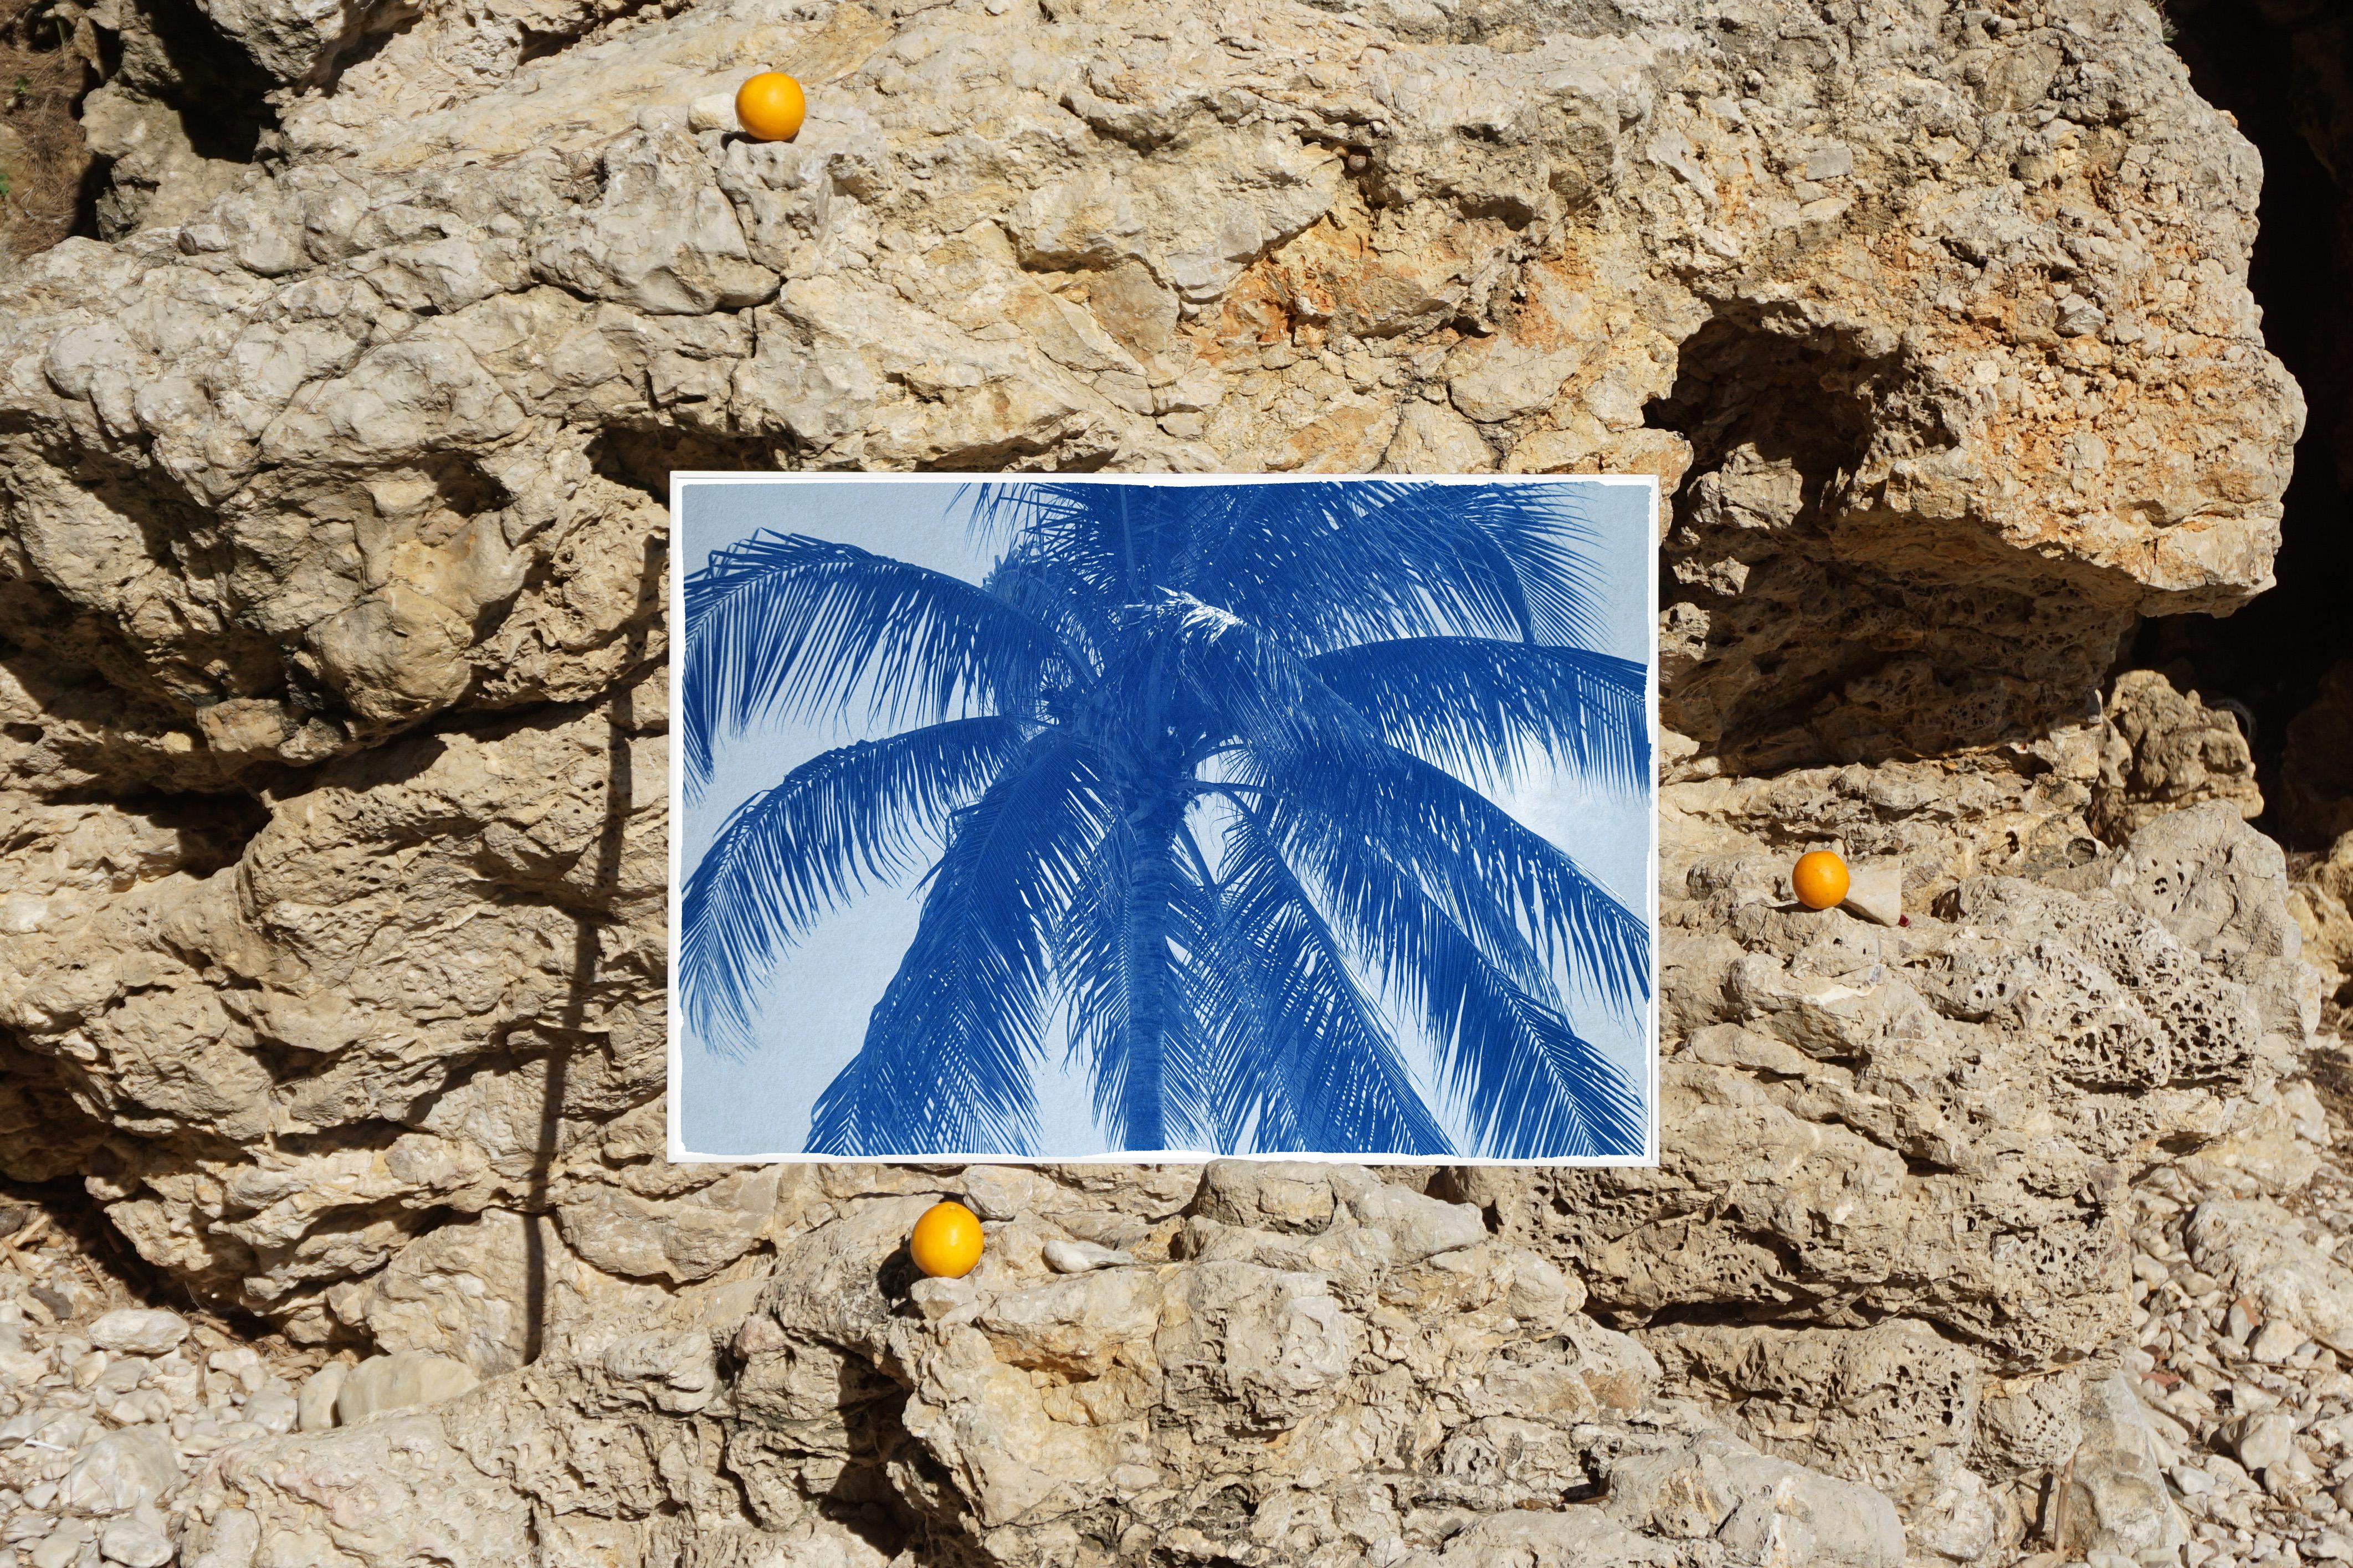 Il s'agit d'un cyanotype exclusif imprimé à la main en édition limitée d'une belle feuille de palmier. 

Détails :
+ Titre : Cocotier
+ Année : 2021
+ Taille de l'édition : 100
+ Tampon et certificat d'authenticité fournis
+ Mesures : 70x100 cm (28x